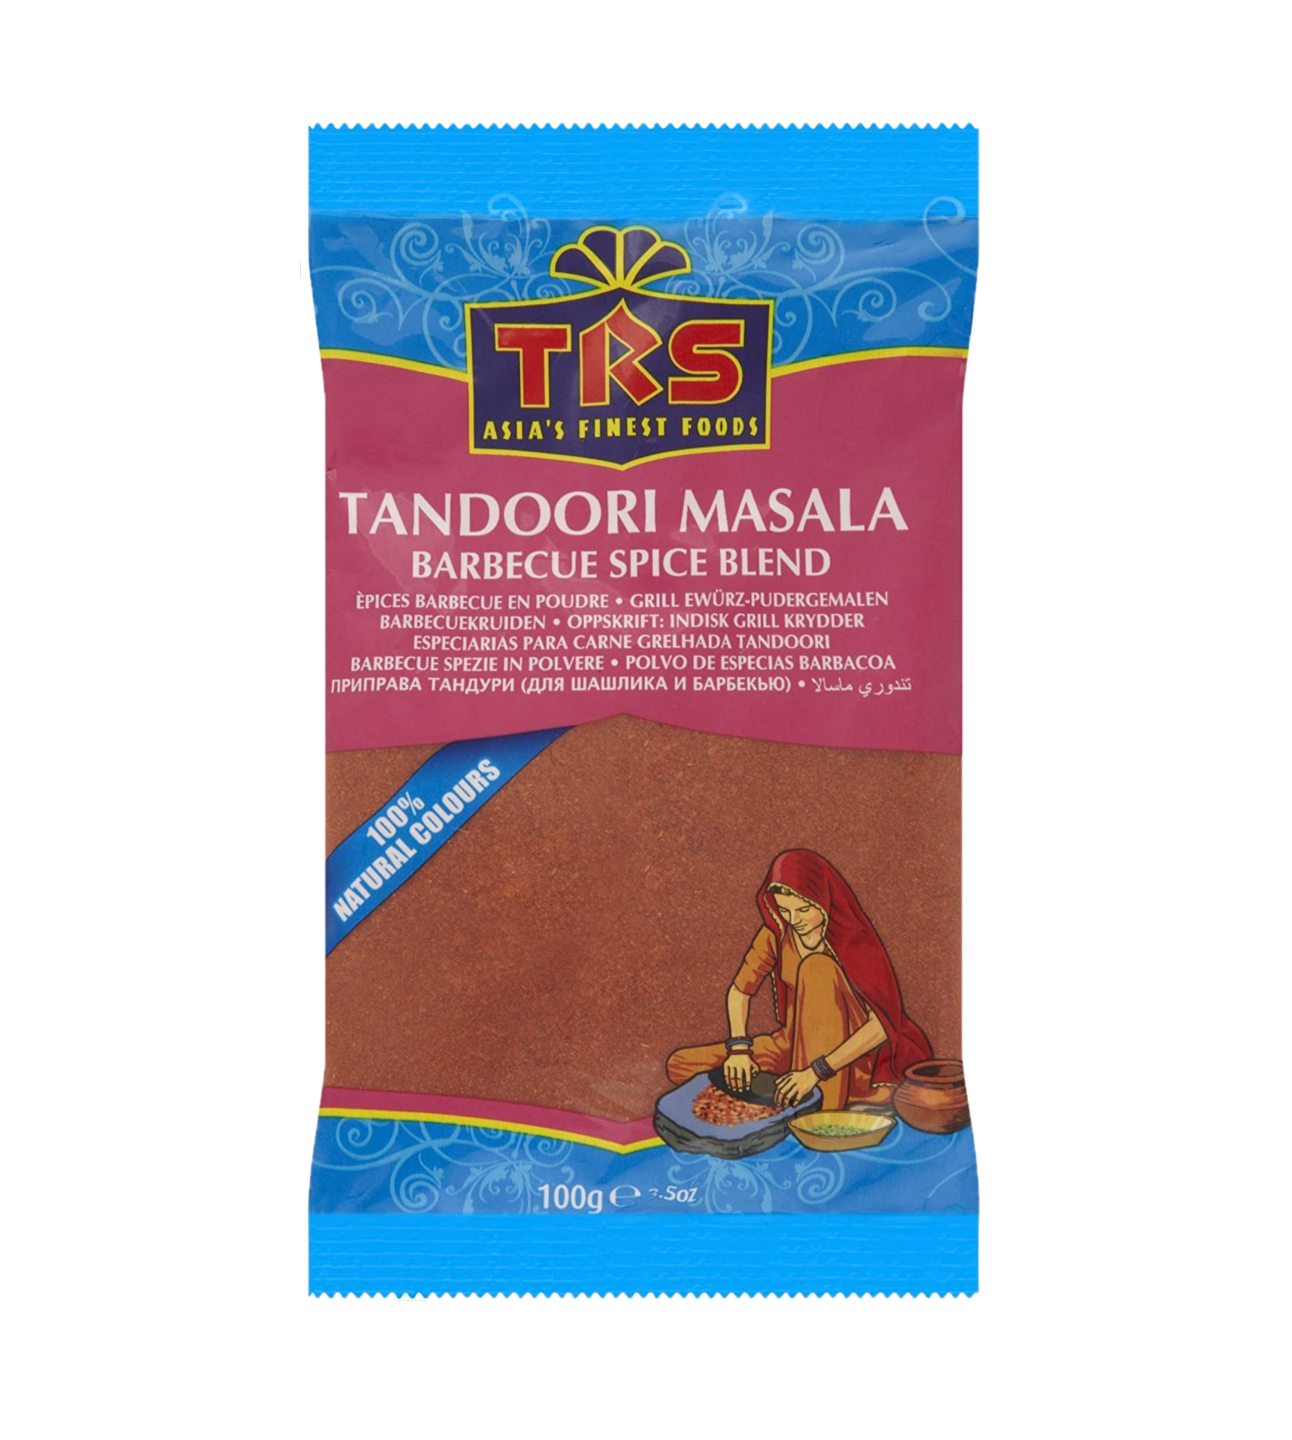 TRS Tandoori masala powder